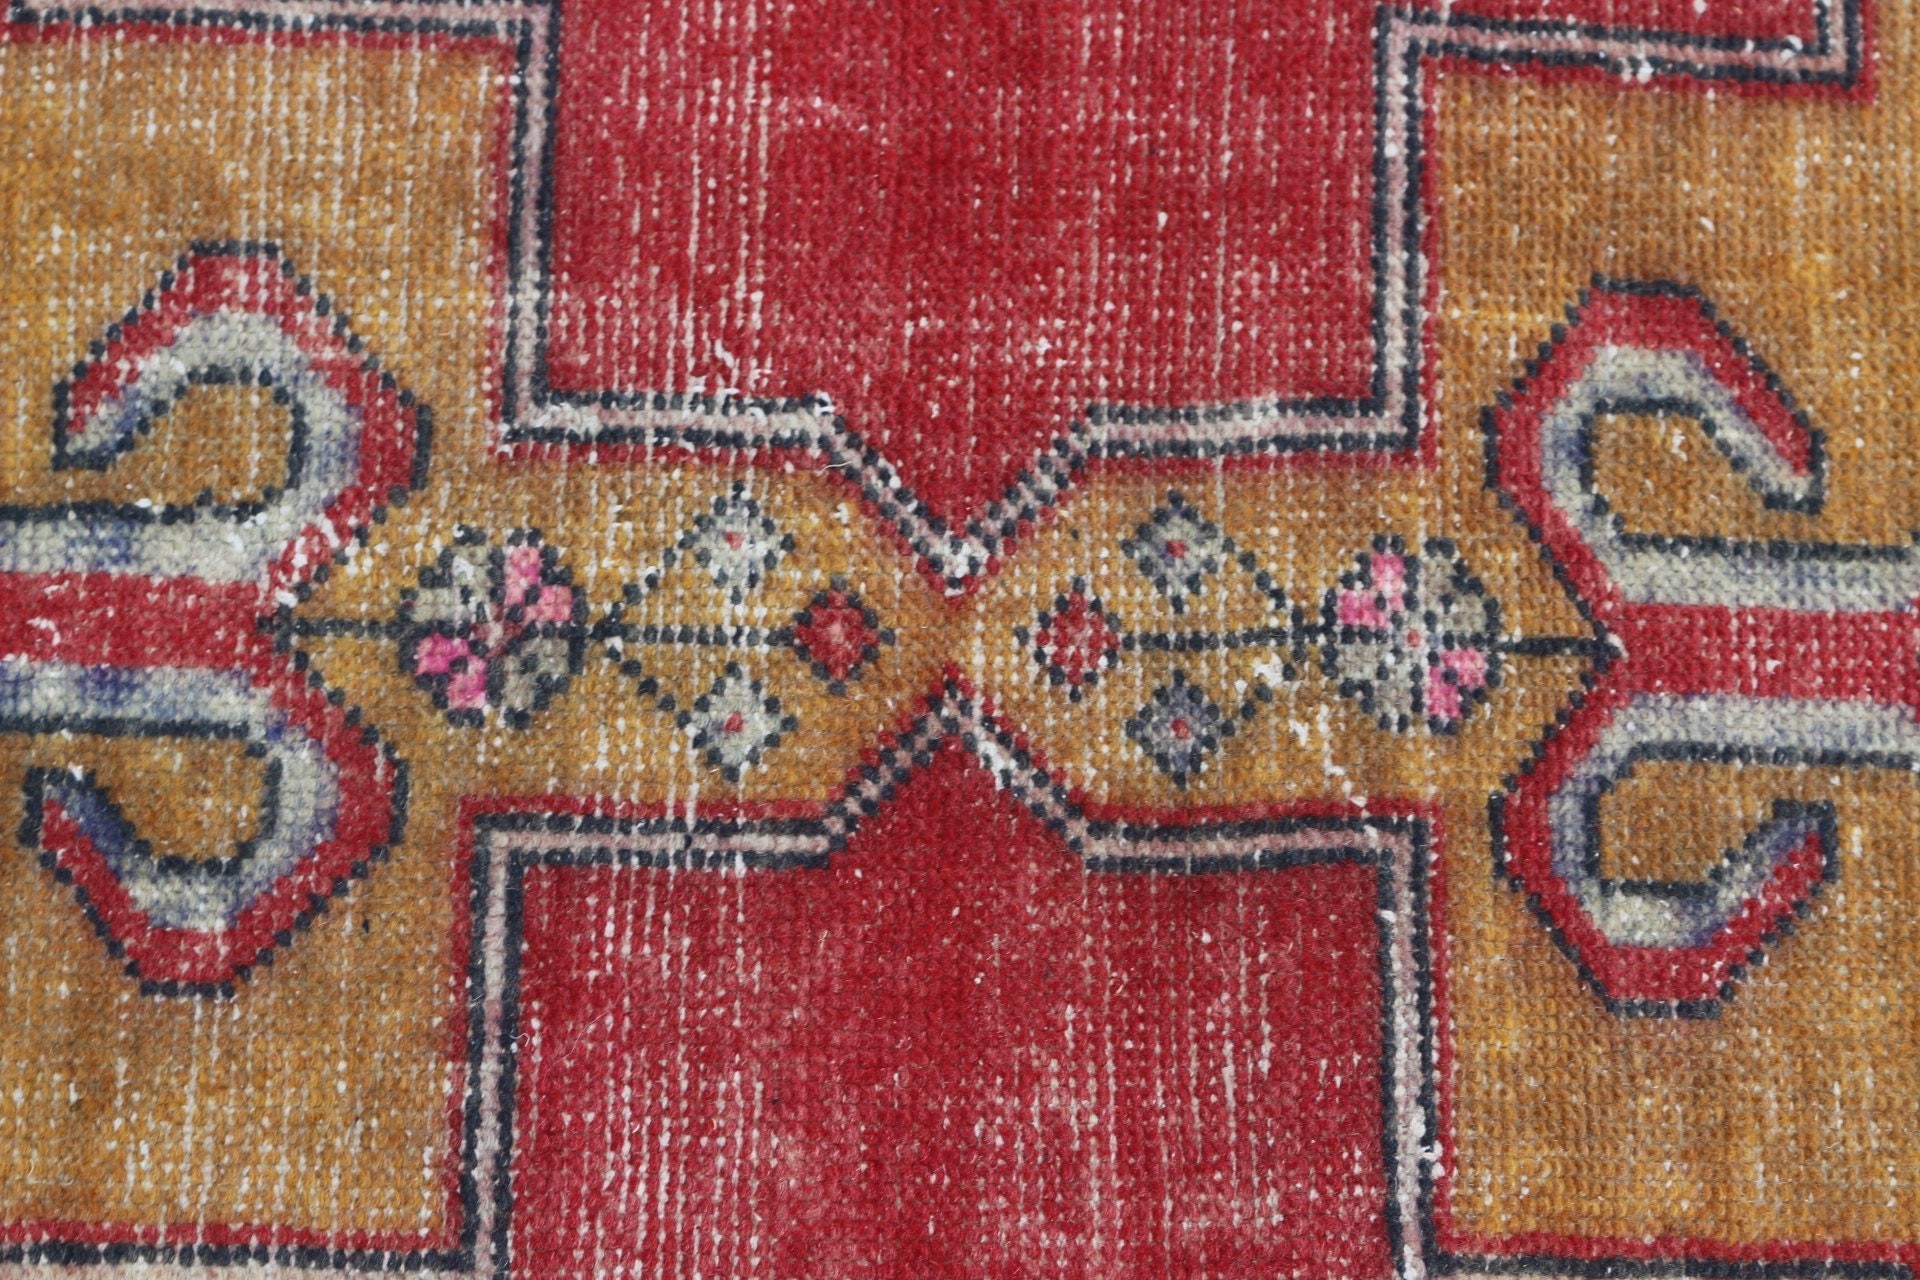 Vintage Rugs, Red Oriental Rug, Oriental Rug, Rugs for Kitchen, 2.9x9 ft Runner Rug, Hallway Rug, Turkish Rug, Floor Rug, Handwoven Rug